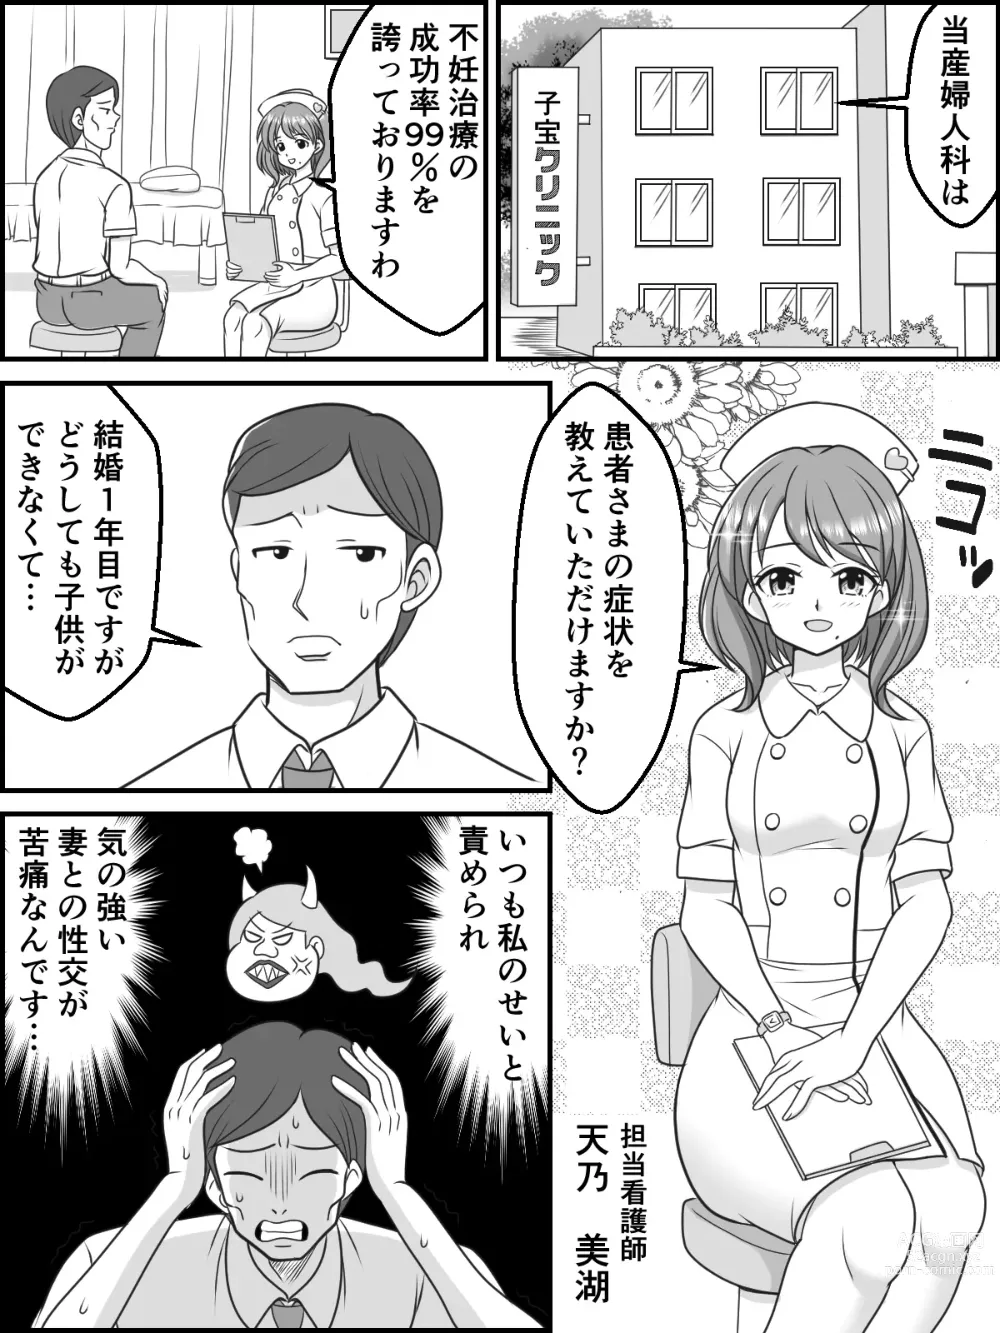 Page 15 of doujinshi Himitsu no Ninkatsu Clinic